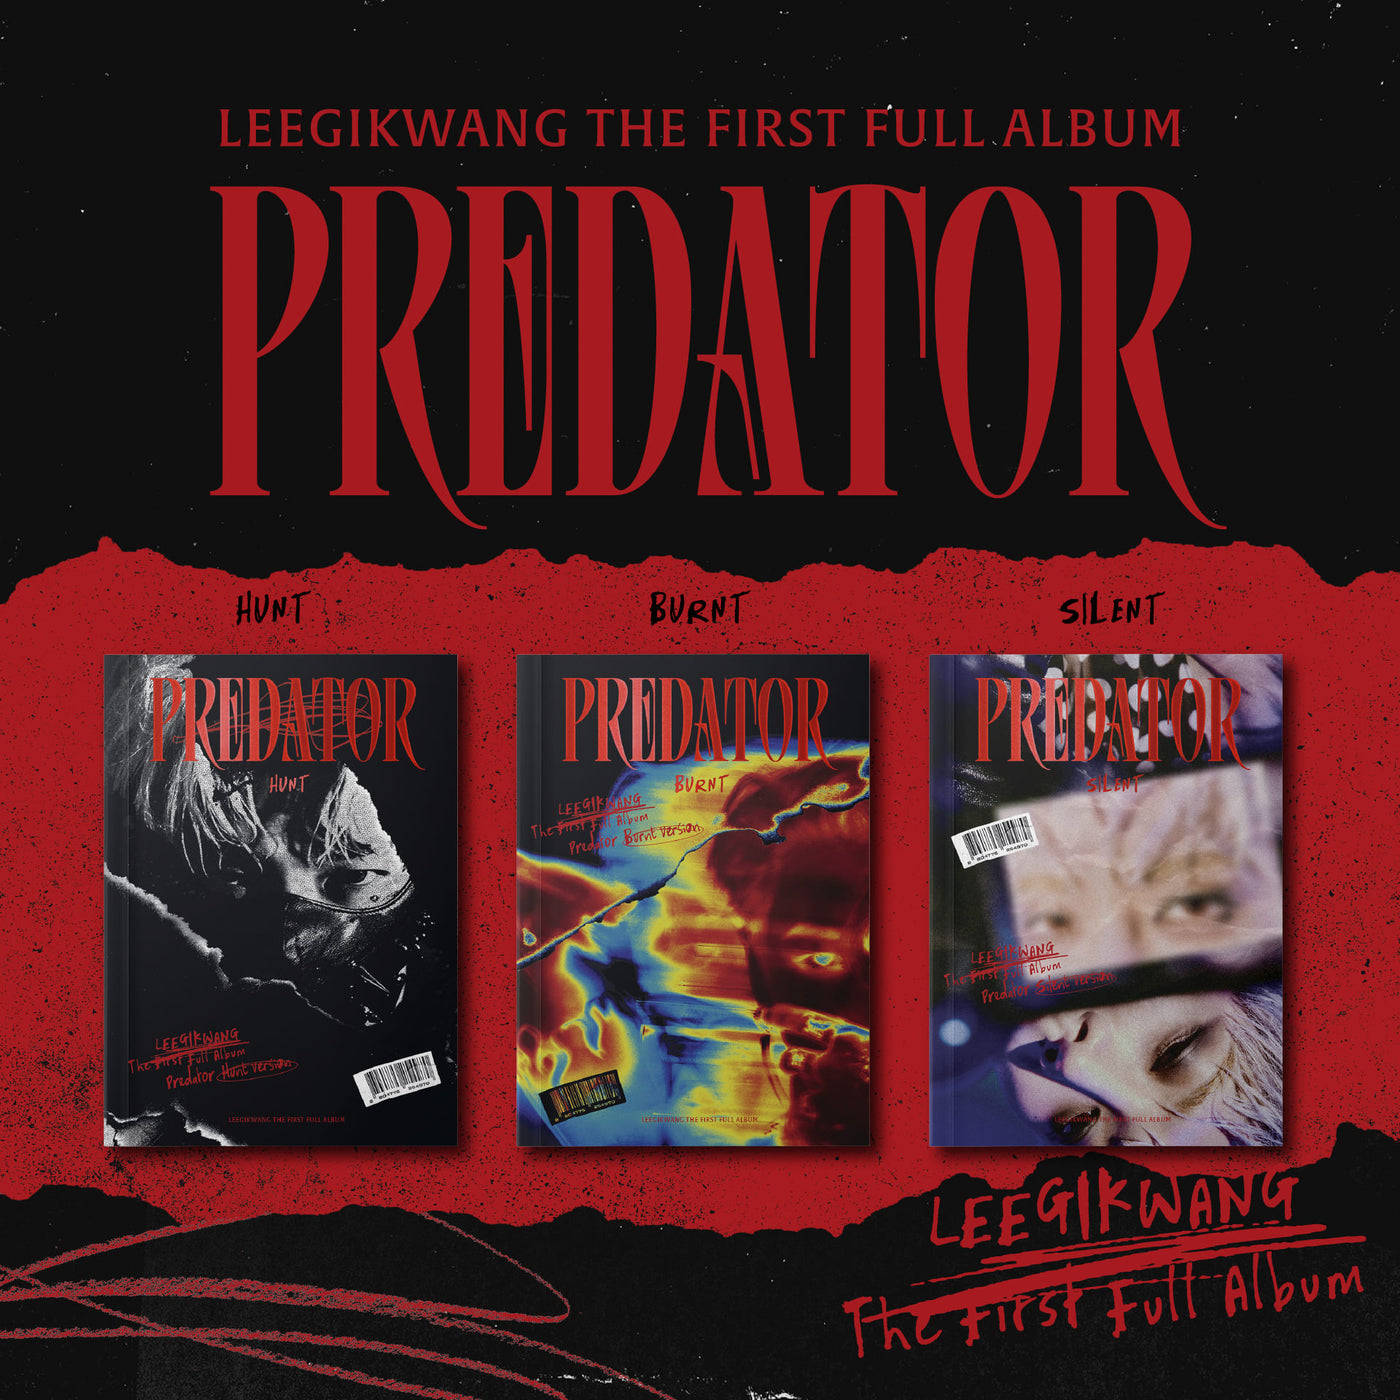 LEE GIKWANG The First Full Album [Predator] 🇰🇷